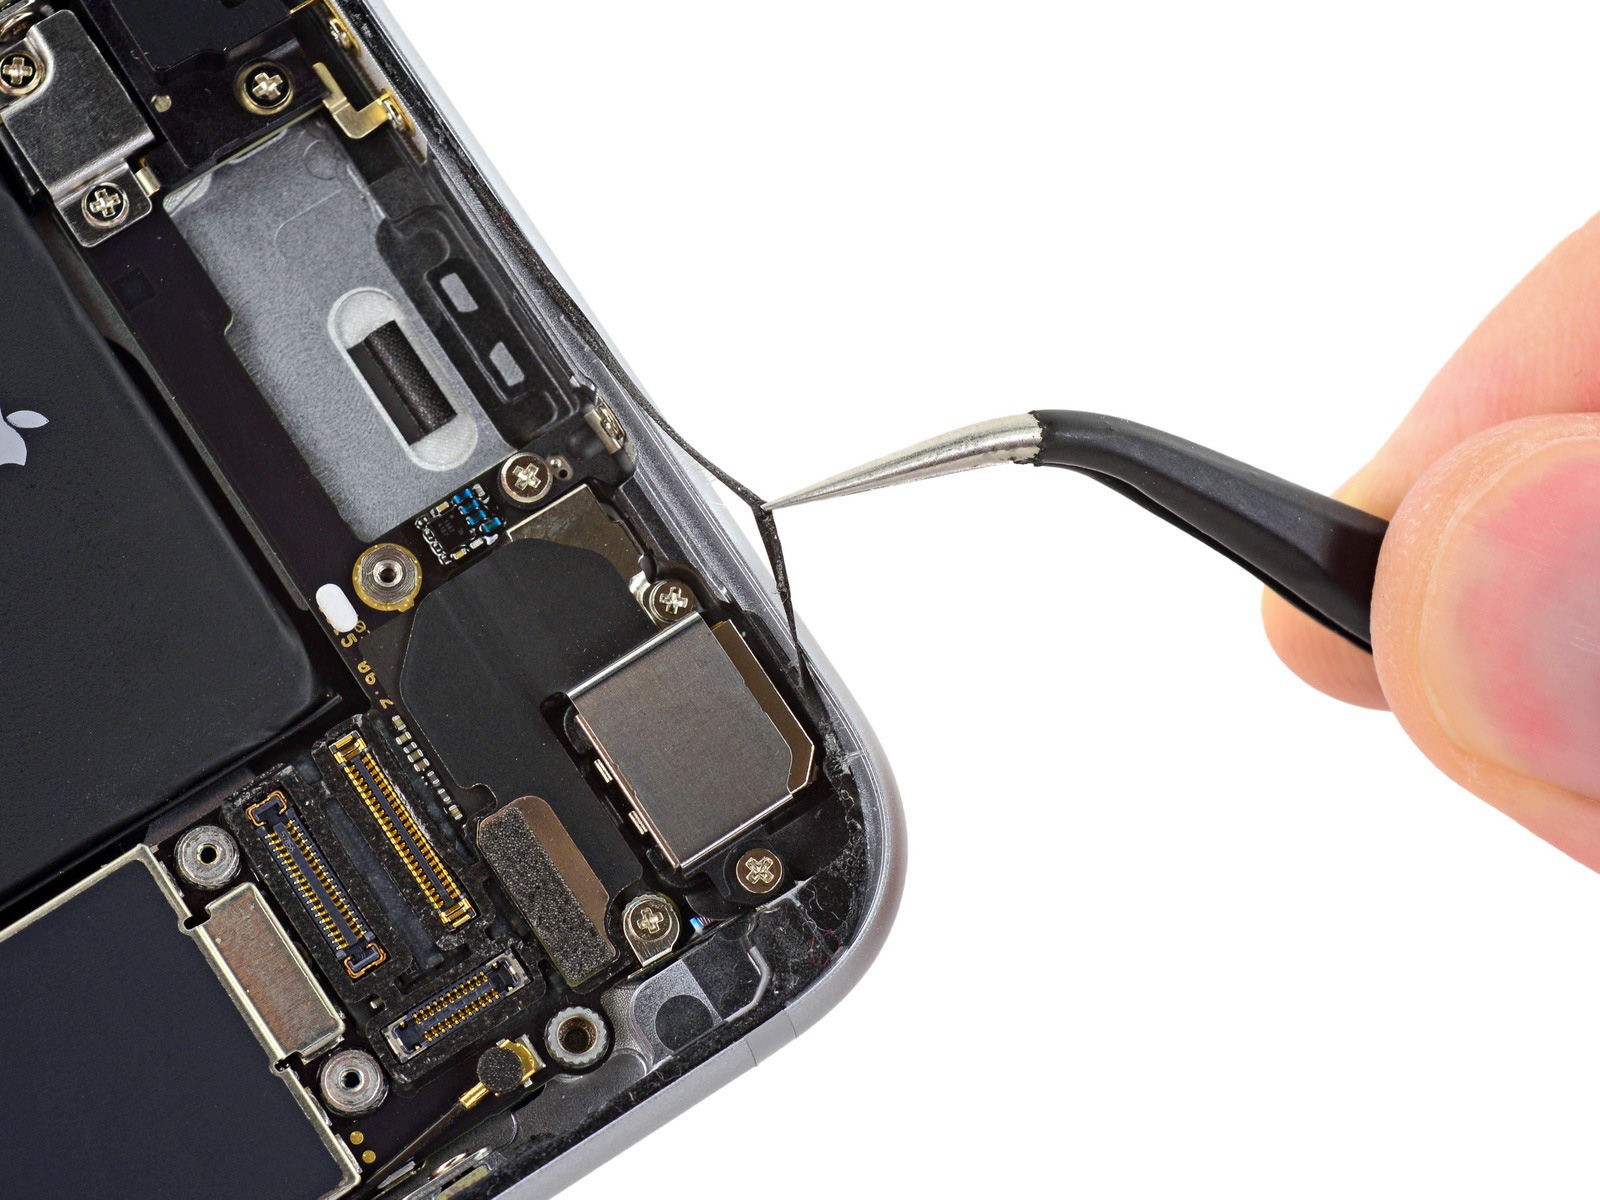 Revestimento interno do iPhone 6s (iFixit)